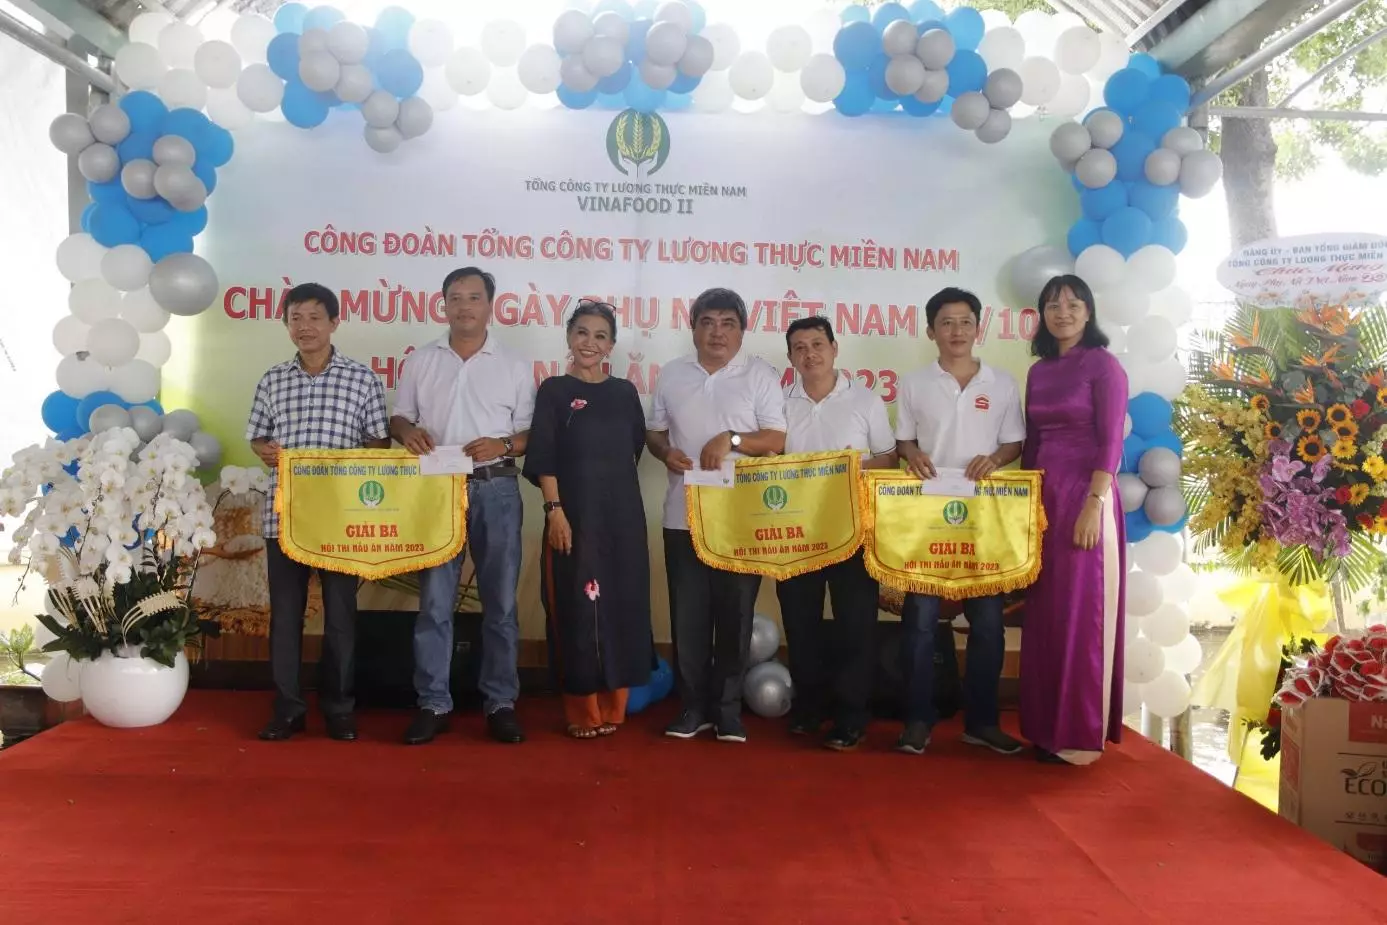 Giải 3 gồm 03 Đội (CĐ CQVP Tổng công ty, Công ty CP Mecofood và Công ty CP Sài Gòn Lương thực)